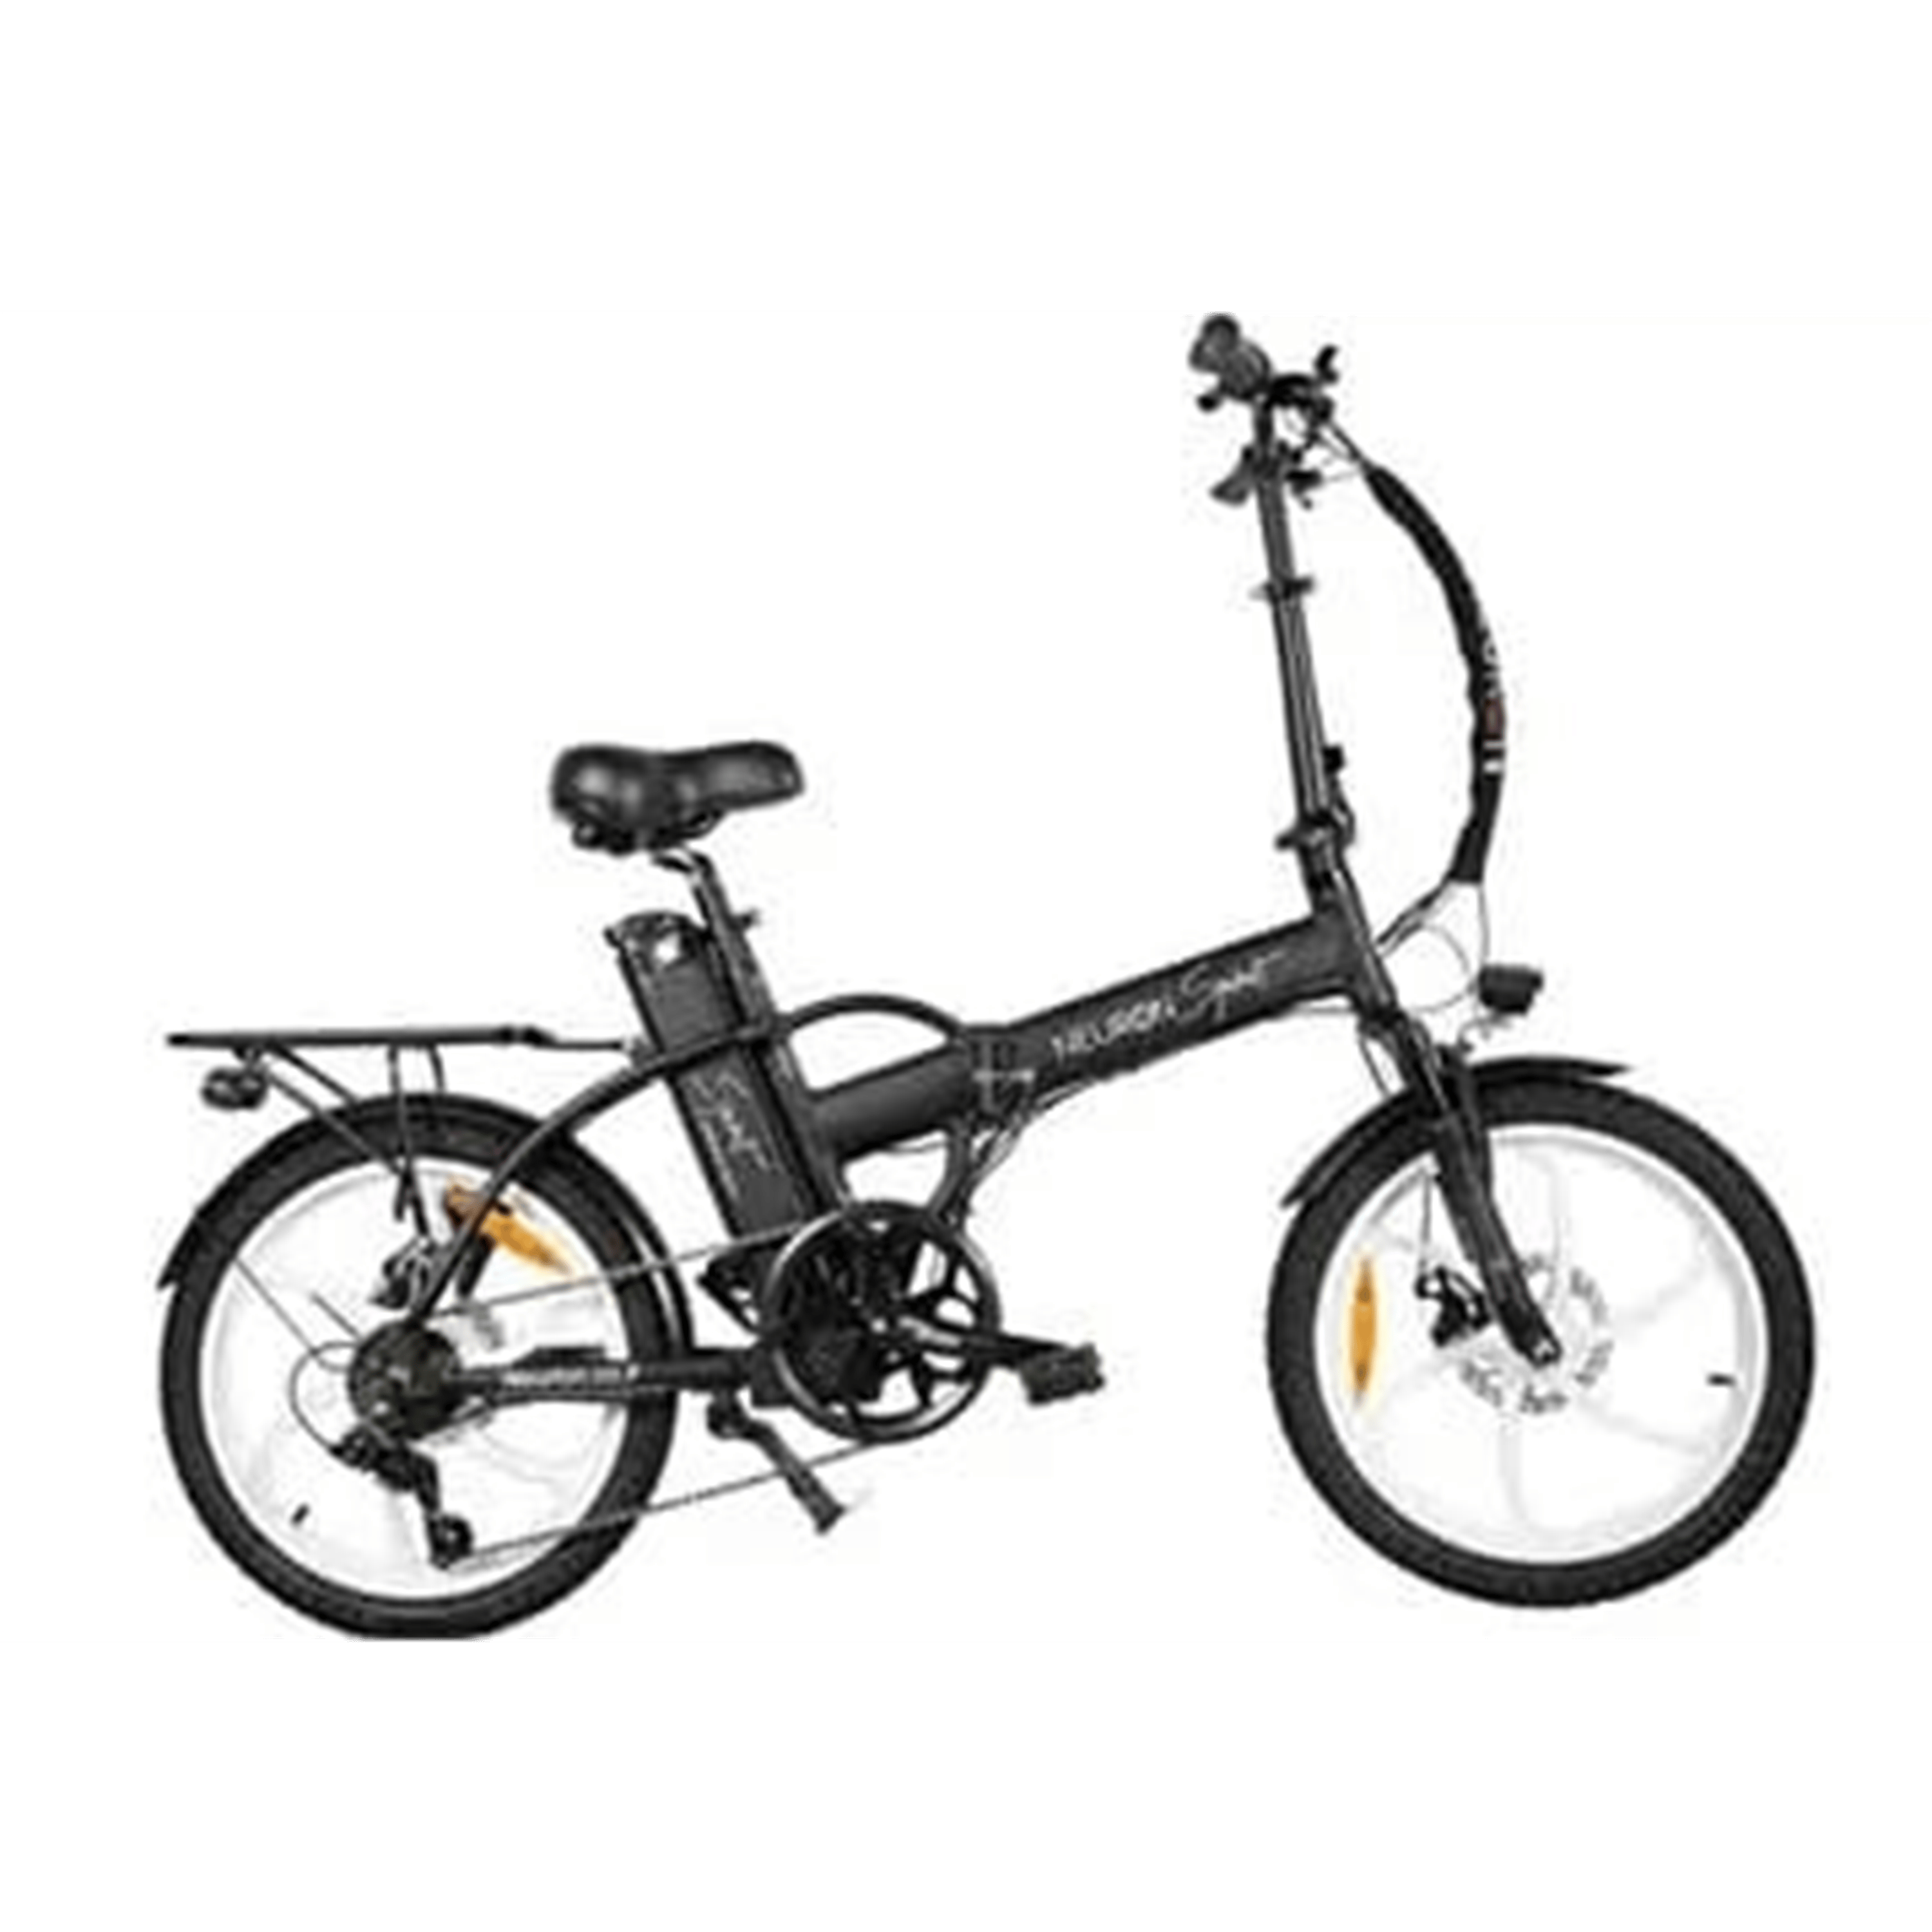 אופניים كهربائيים مع צג رقمي Neuron Spirit - لون أسود مع ג'אנטים לבנים ضمان لمدة عام من قبل المستورد الرسمي